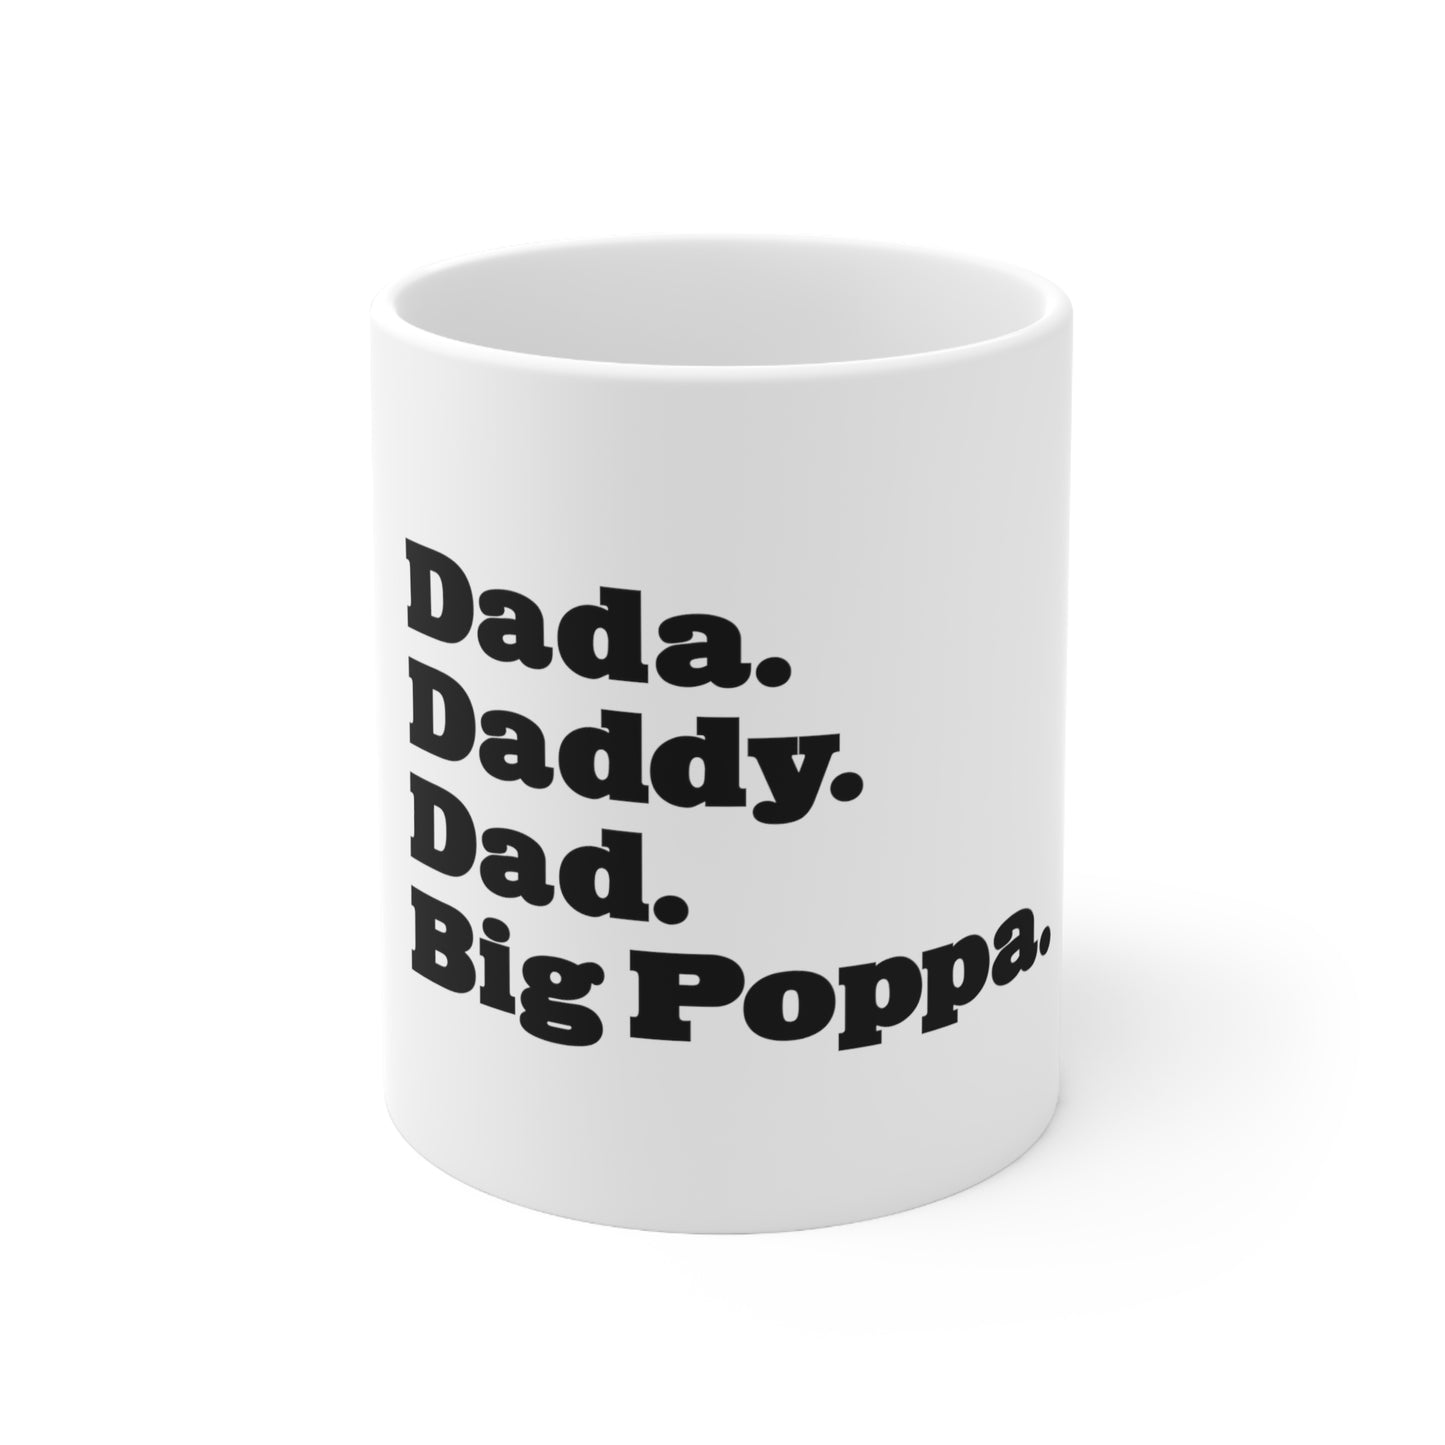 Dada Daddy Dad Big Poppa 11oz Mug Great Father's Day Gift for Dada Daddy Dad Big Poppa